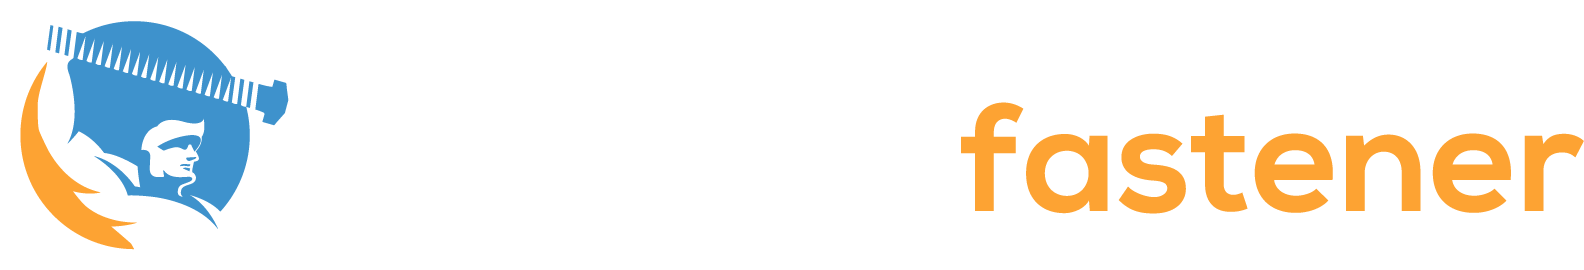 monster fastener logo